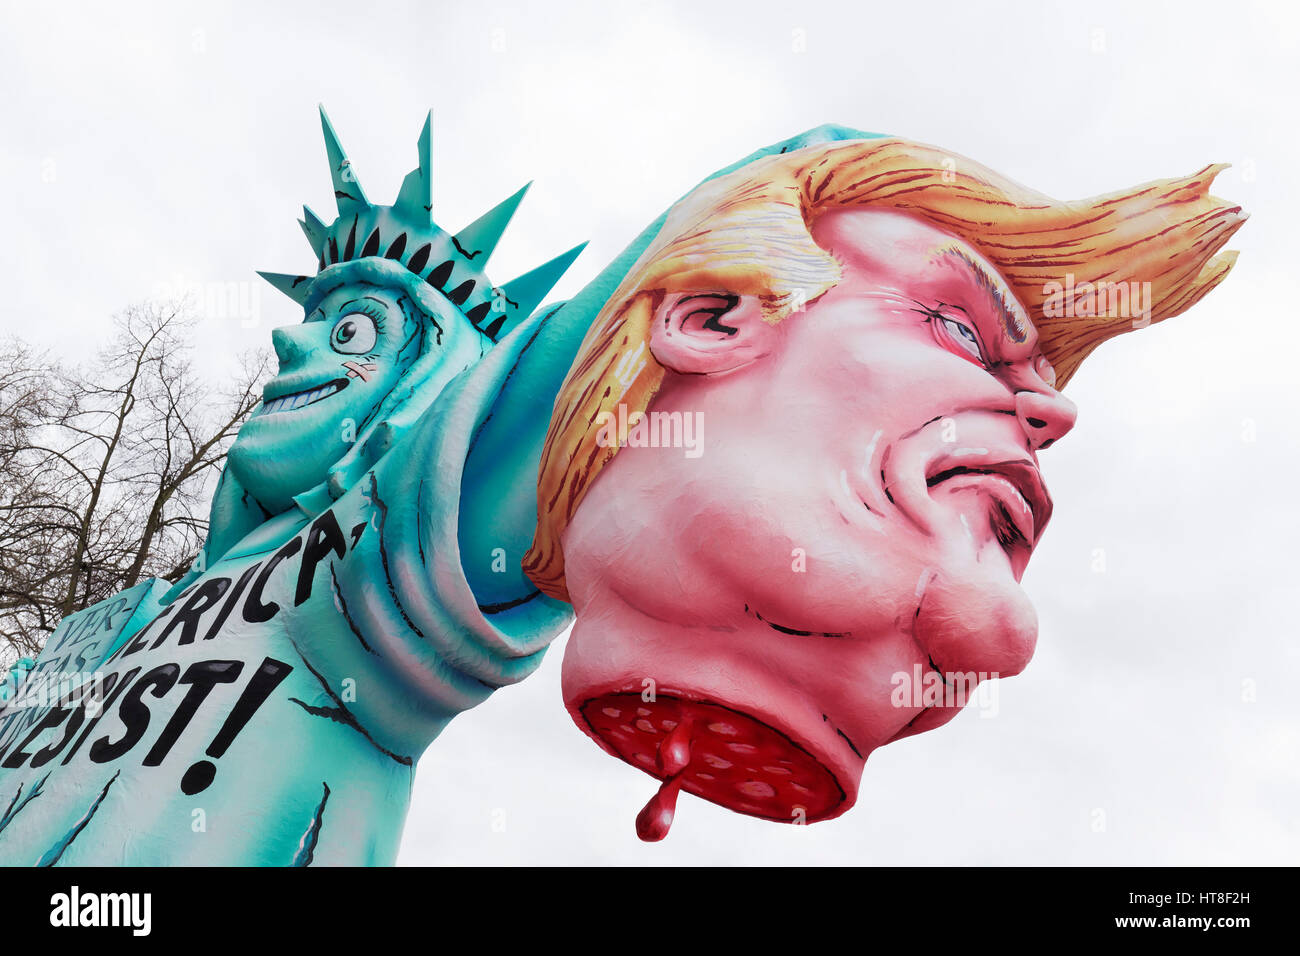 Statua della Libertà tiene testa tagliata del Presidente americano Donald Trump, in carta pesta la figura, caricatura politica, motto carrello Foto Stock